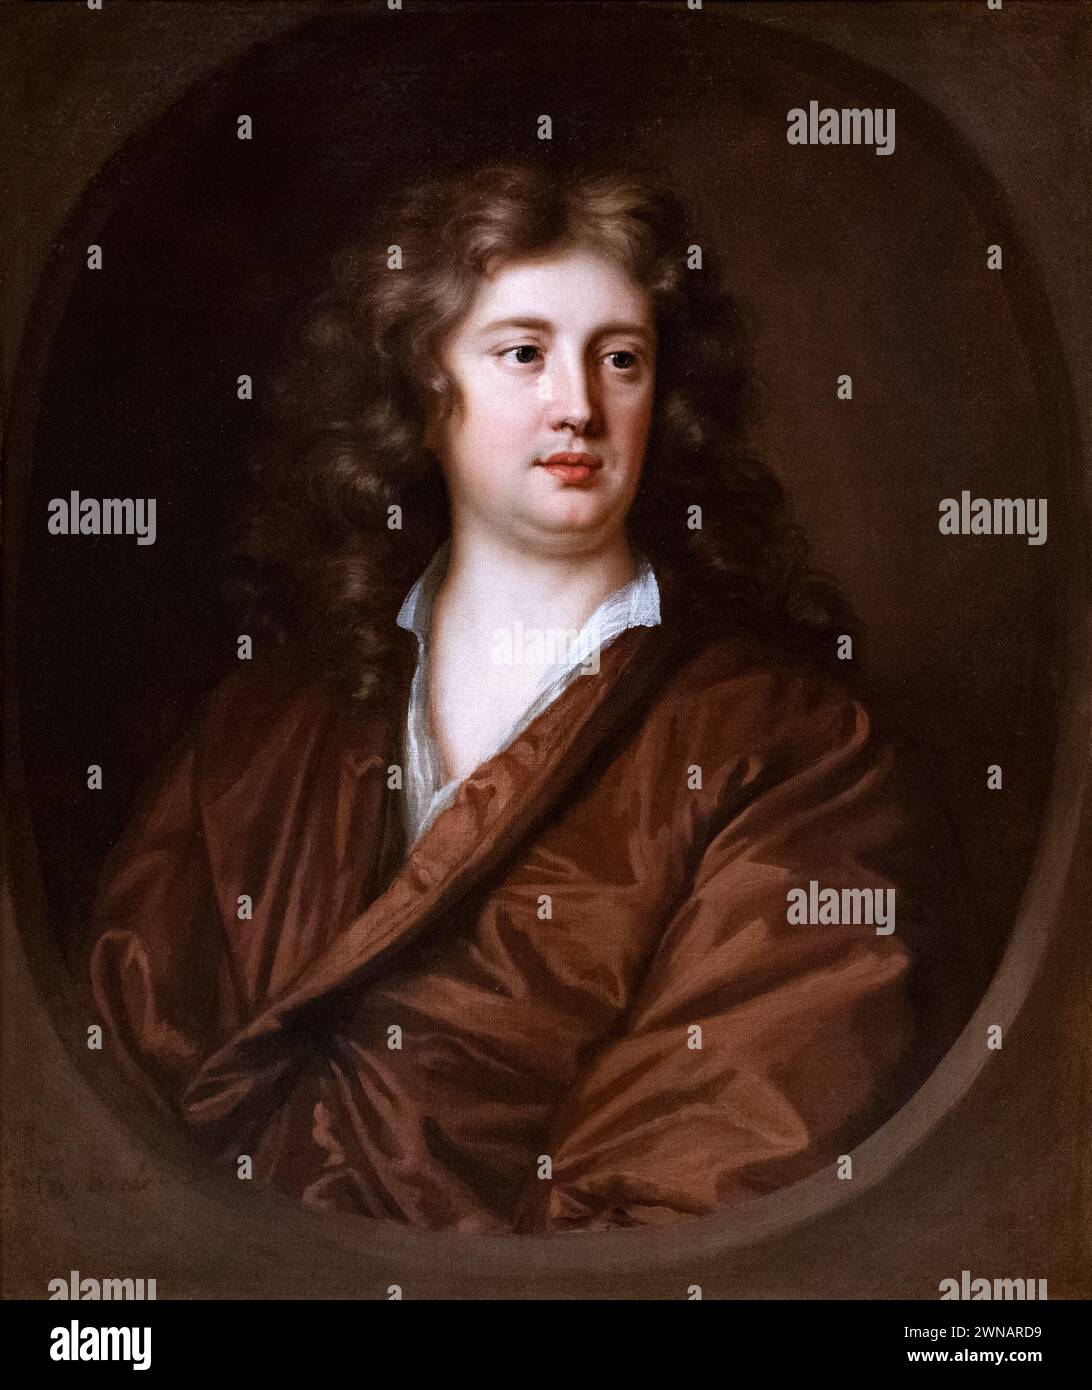 Peinture de Mary Beale, Portrait d'un jeune homme, 1680. Artiste anglaise du XVIIe siècle et portraitiste, 1633-1699 Banque D'Images